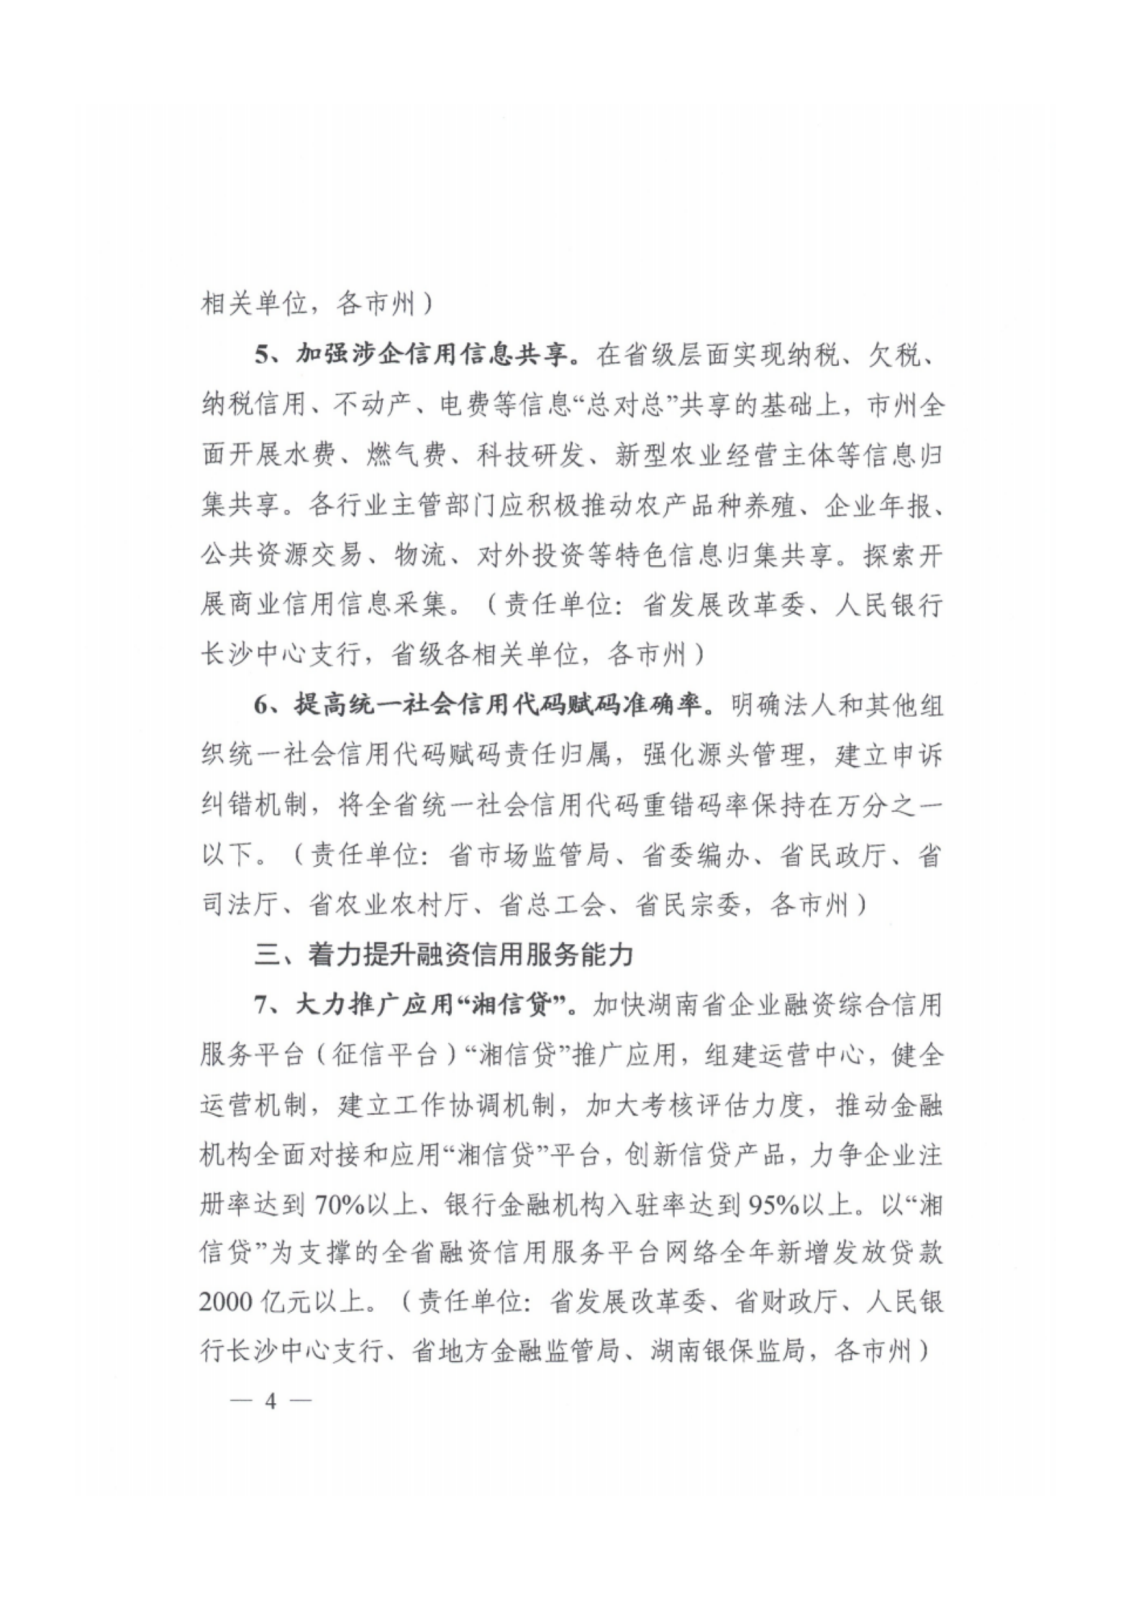 2023年湖南省社会信用体系建设工作要点_03.png